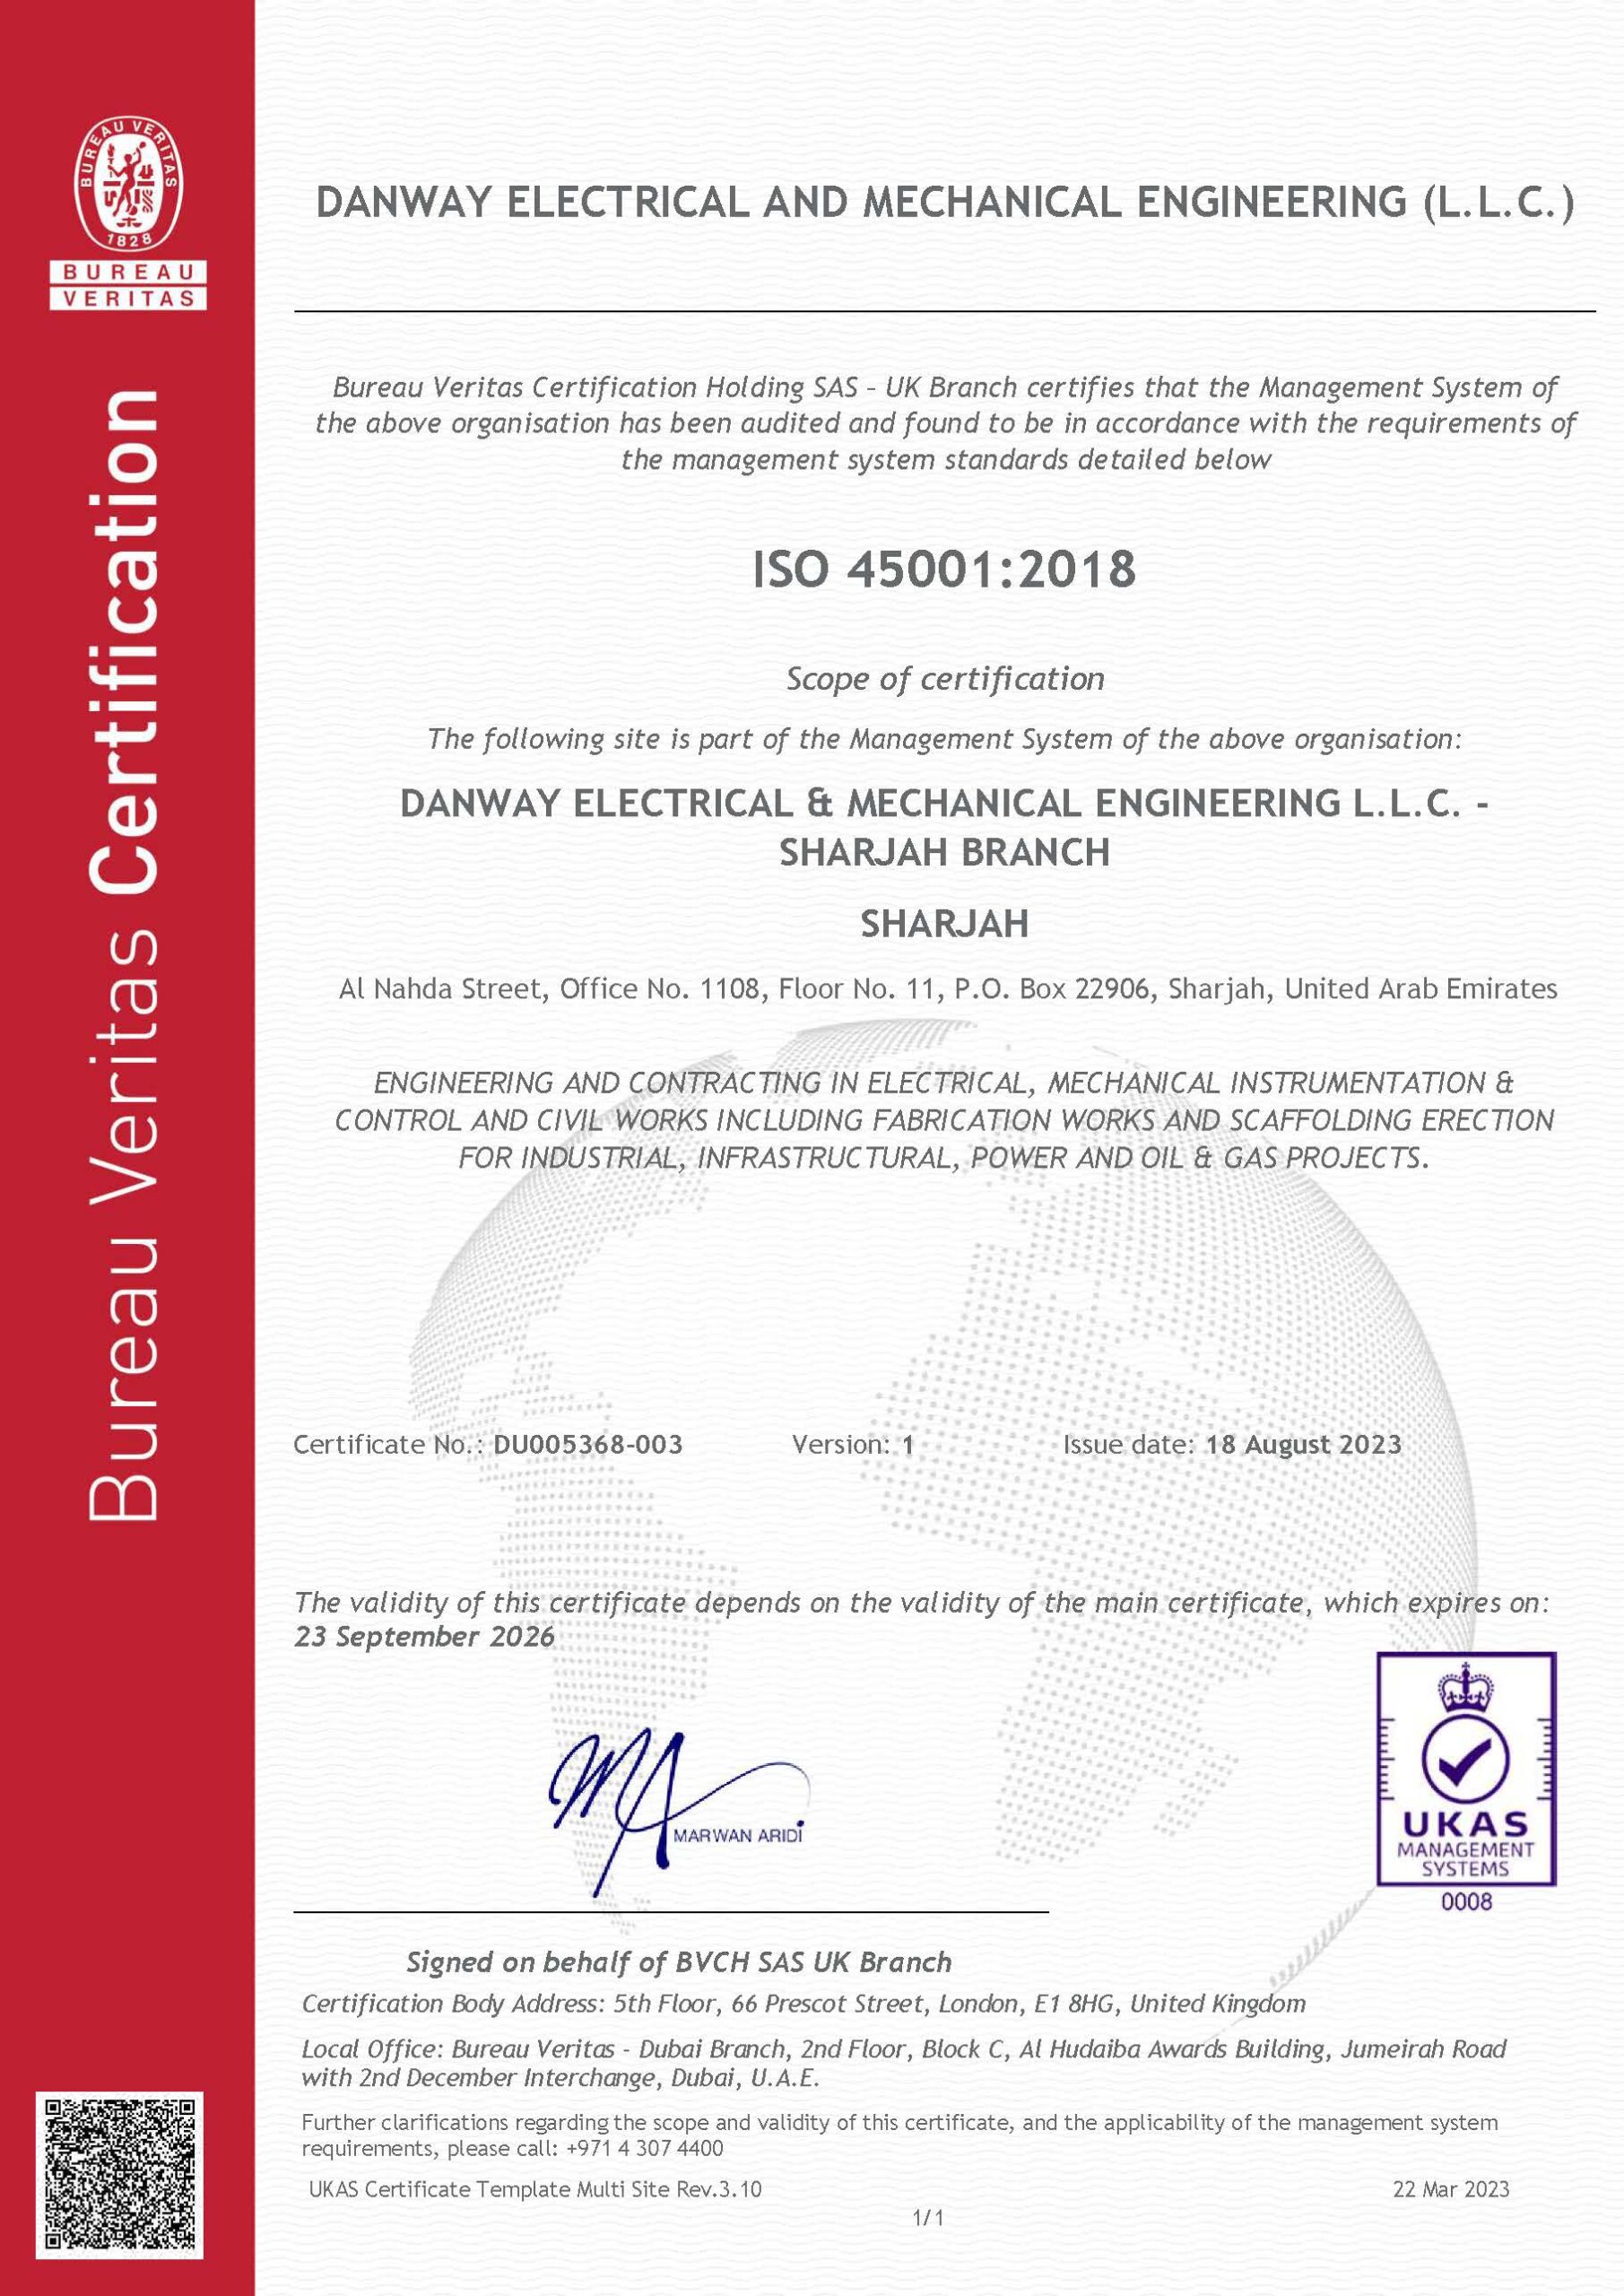 ISO45001:2018 Danway EME, Sharjah